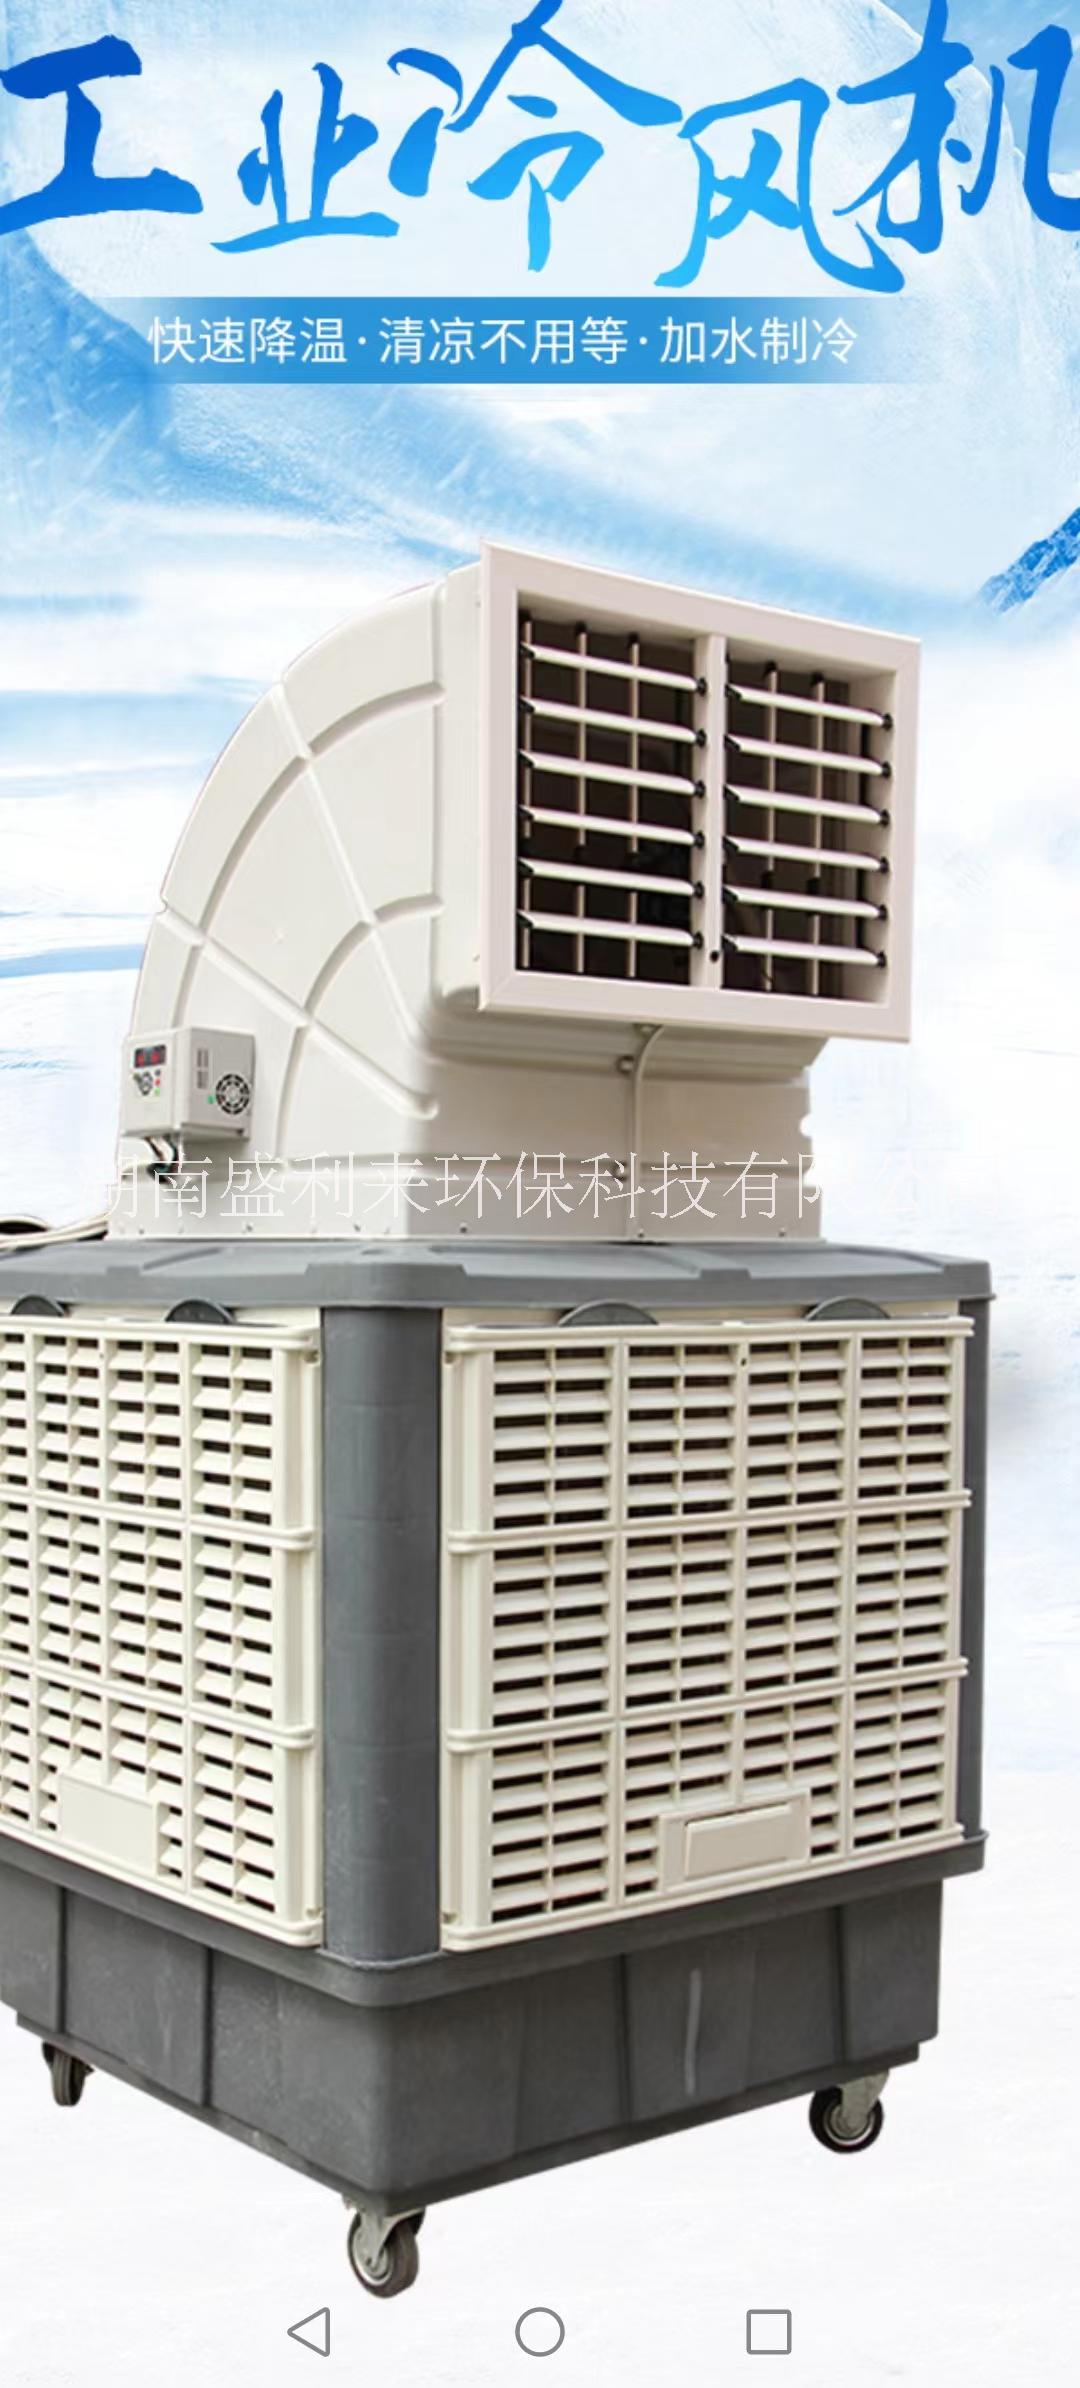 环保空调/蒸发式水冷空调  株洲SLL-20环保空调/蒸发式水冷空调